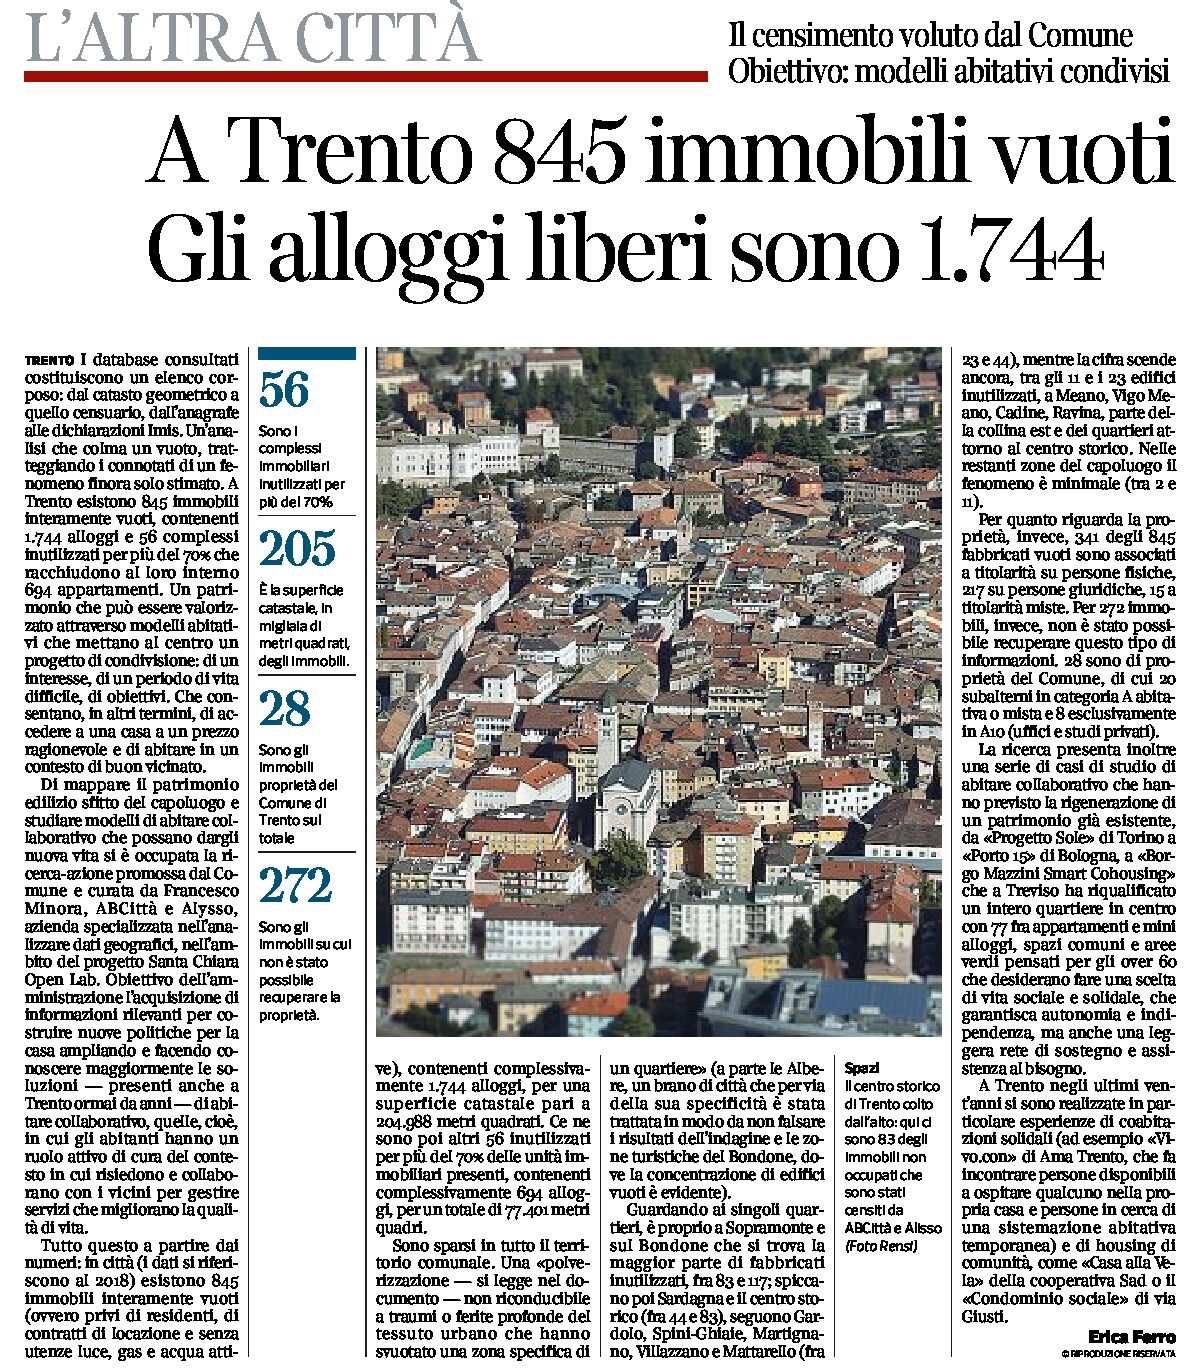 Trento: 845 immobili vuoti. Gli alloggi liberi sono 1744